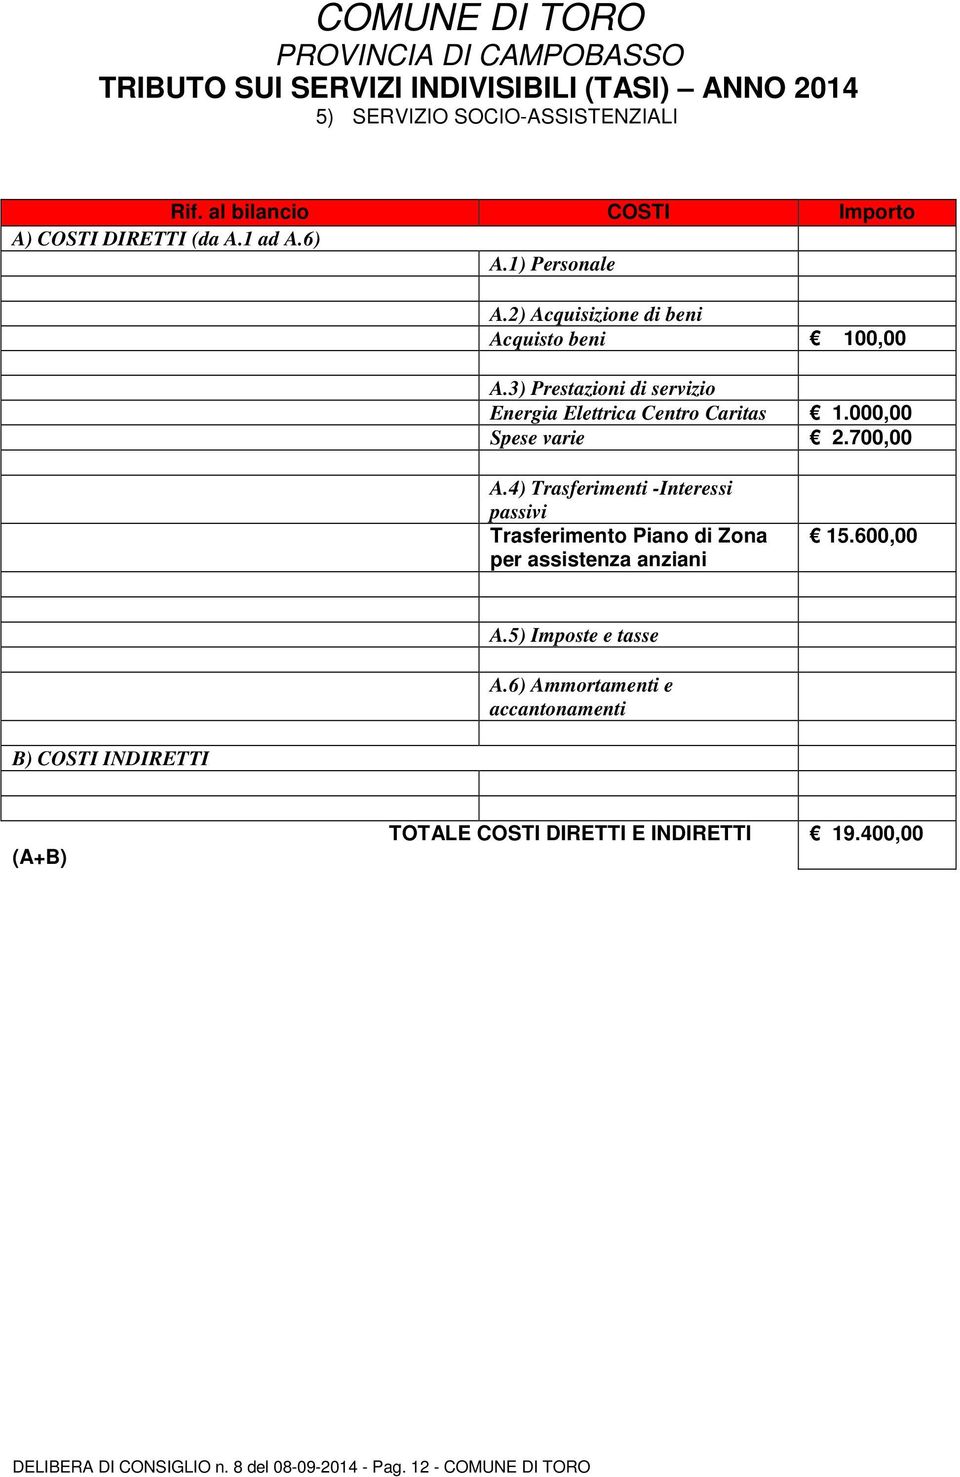 3) Prestazioni di servizio Energia Elettrica Centro Caritas 1.000,00 Spese varie 2.700,00 A.